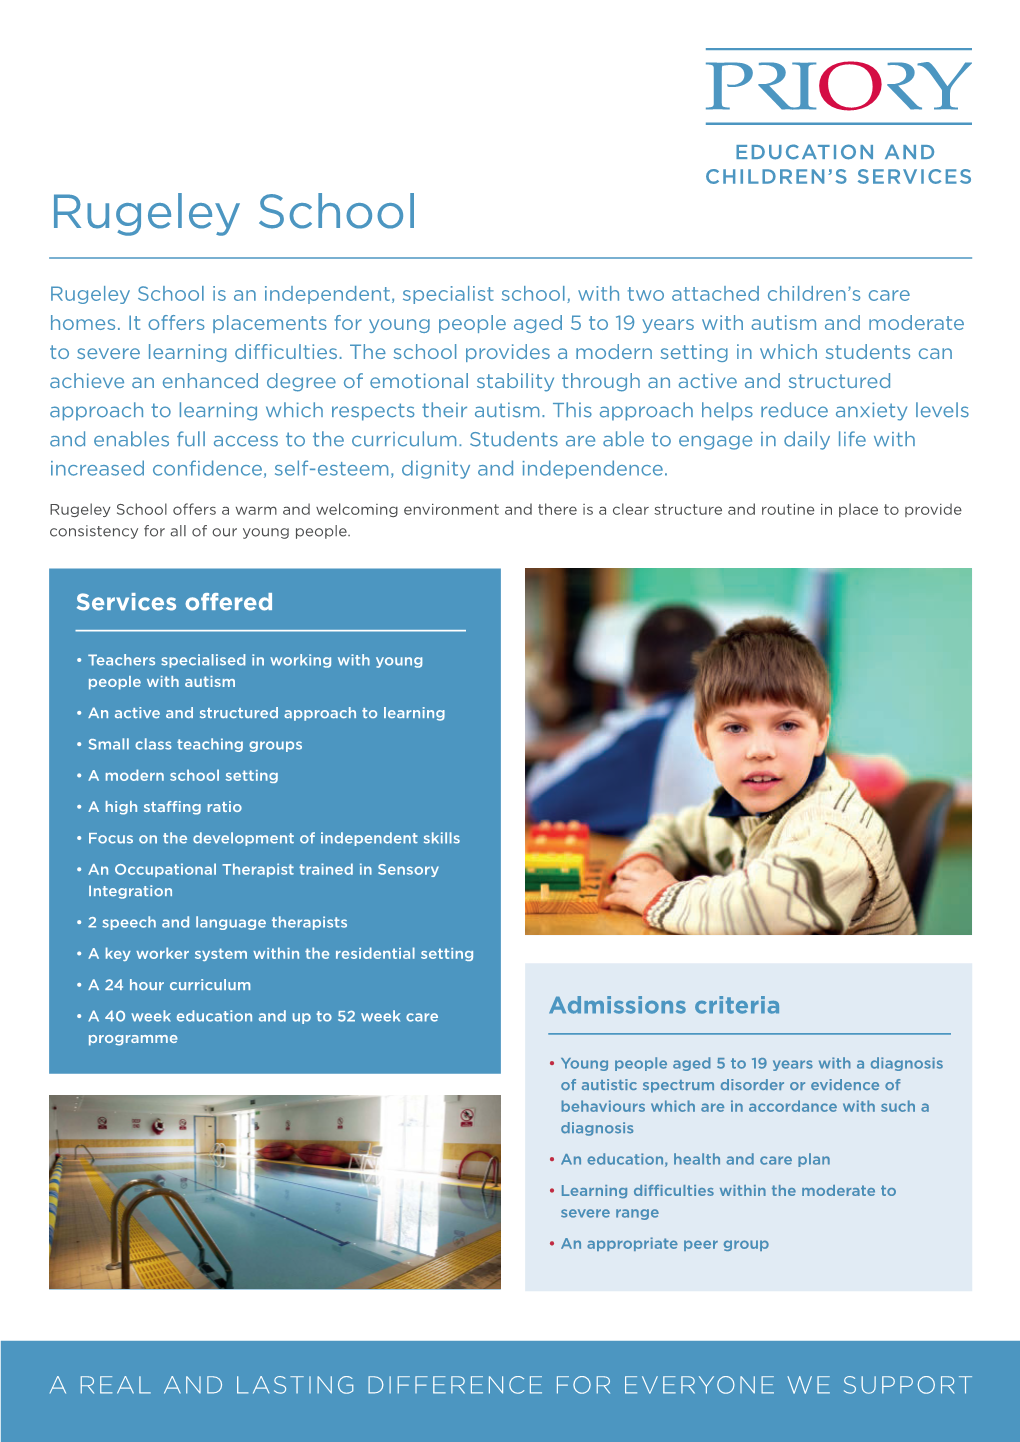 Rugeley School Site Information